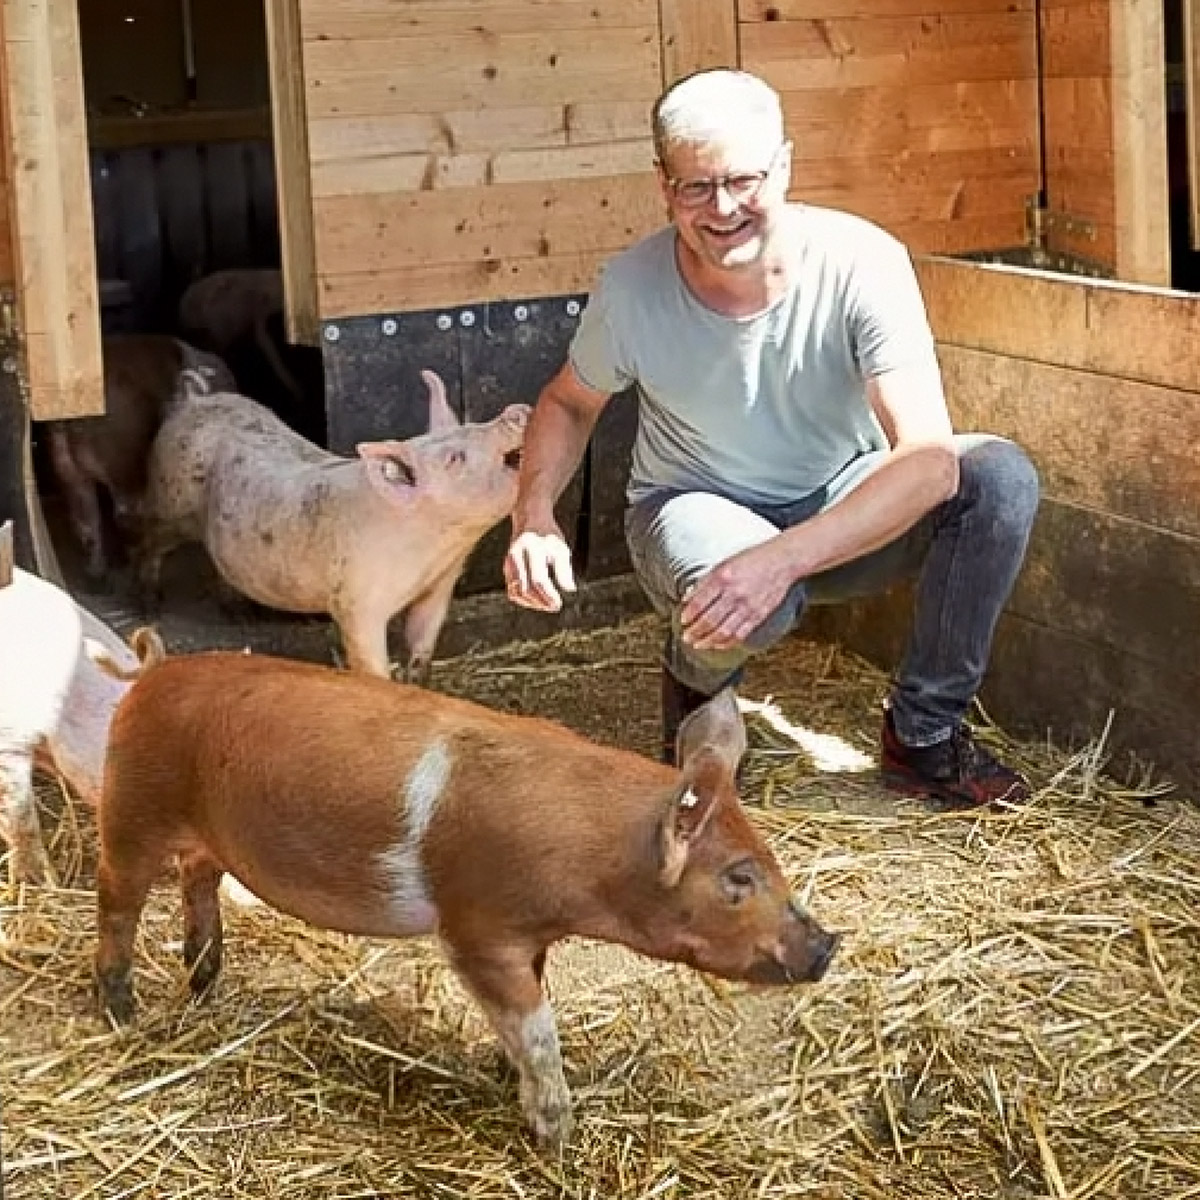 PRIMAGAS Futuria - Propan, Referenz, Bio Hof May, Herr May mit seinen Schweinen